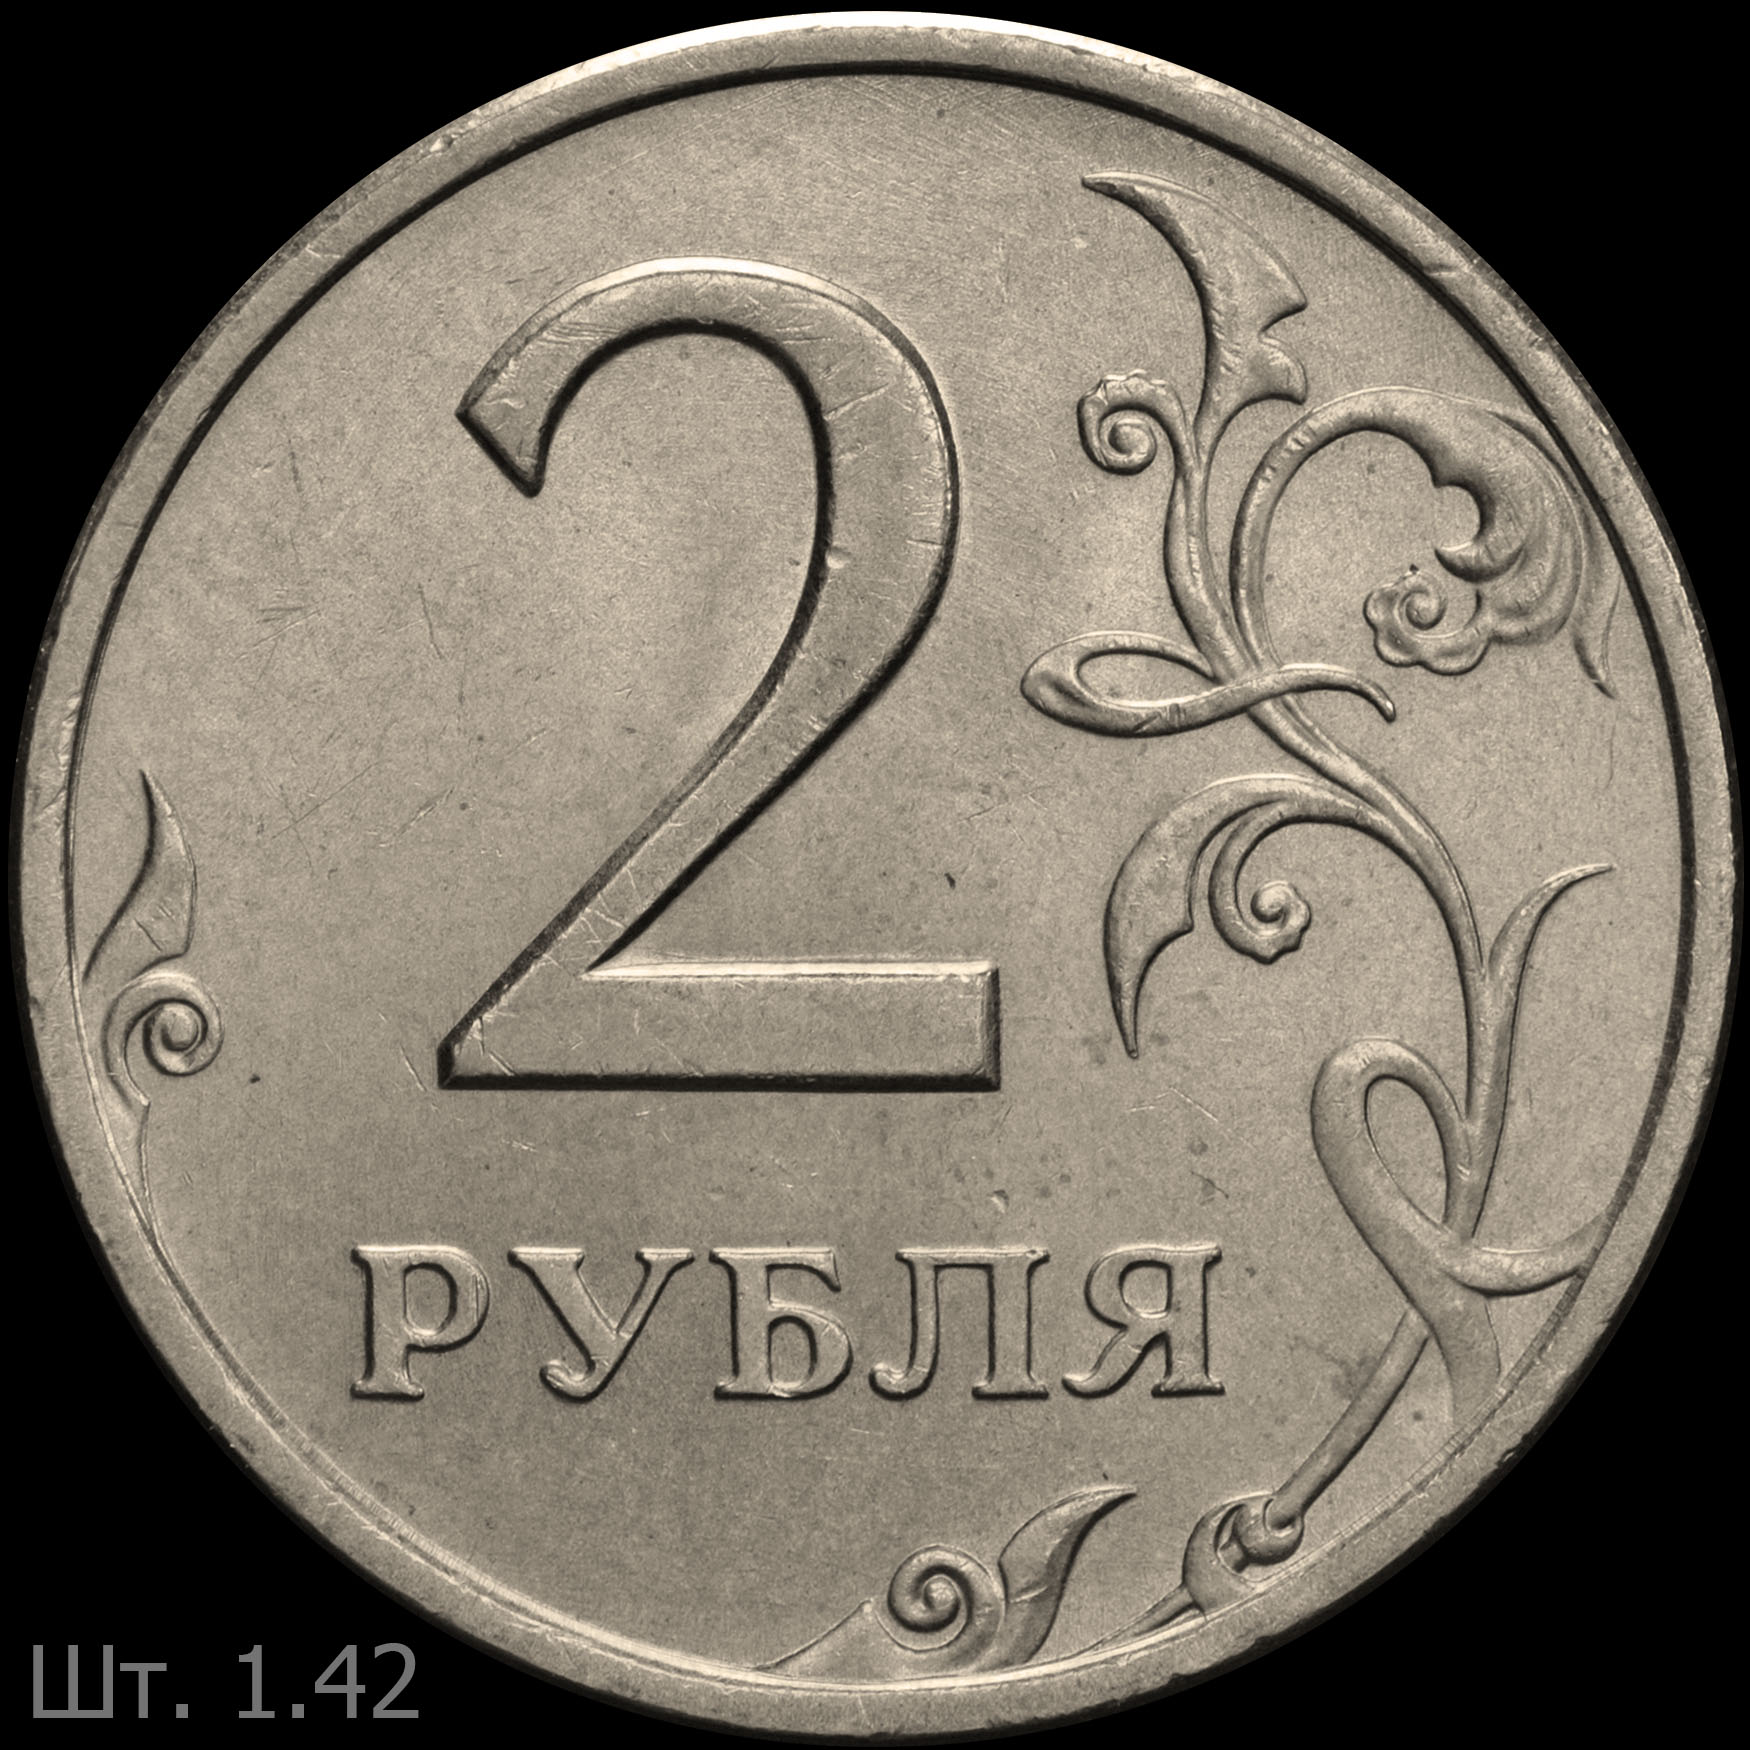 Двести шестьдесят два. 2 Рубля. 2 Рубля 2006. 2 Рубля бумажные. 2 Рубля 2016 СПМД как отличить.